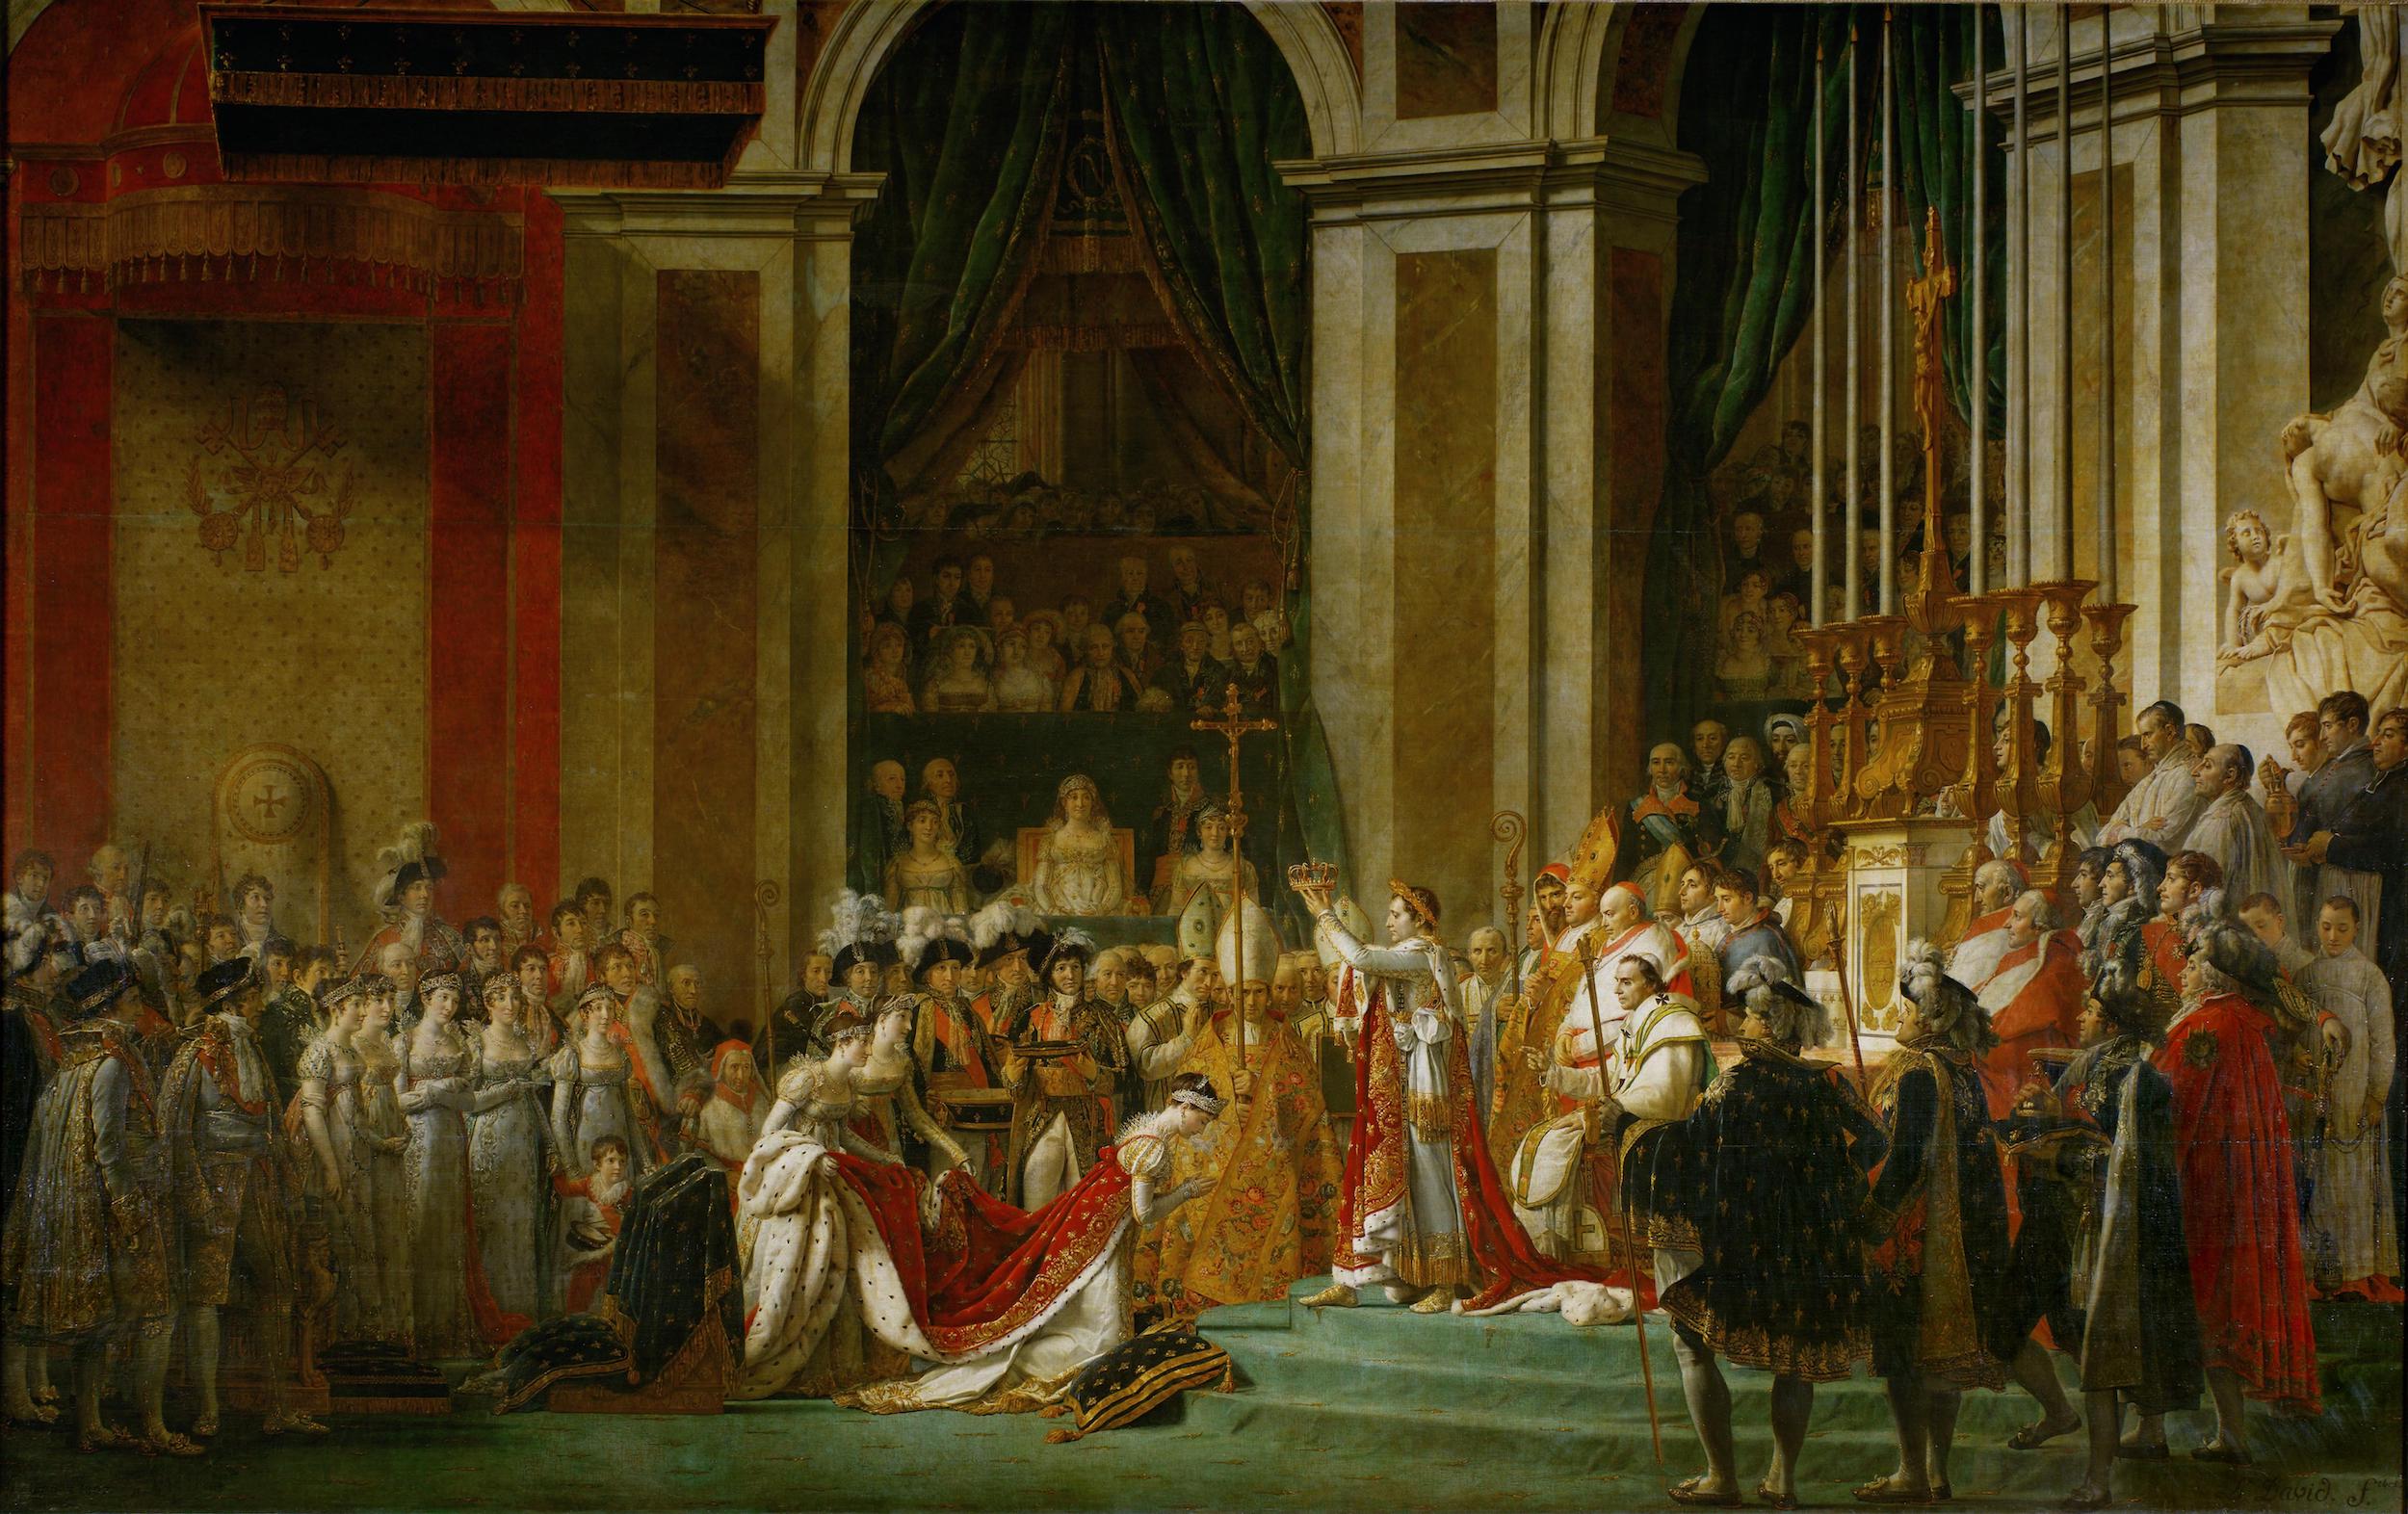 拿破仑一世皇帝加冕典礼和约瑟芬皇后的加冕礼 by 雅克 大卫 - 1806-1807 - 6.21 x 9.79 m 